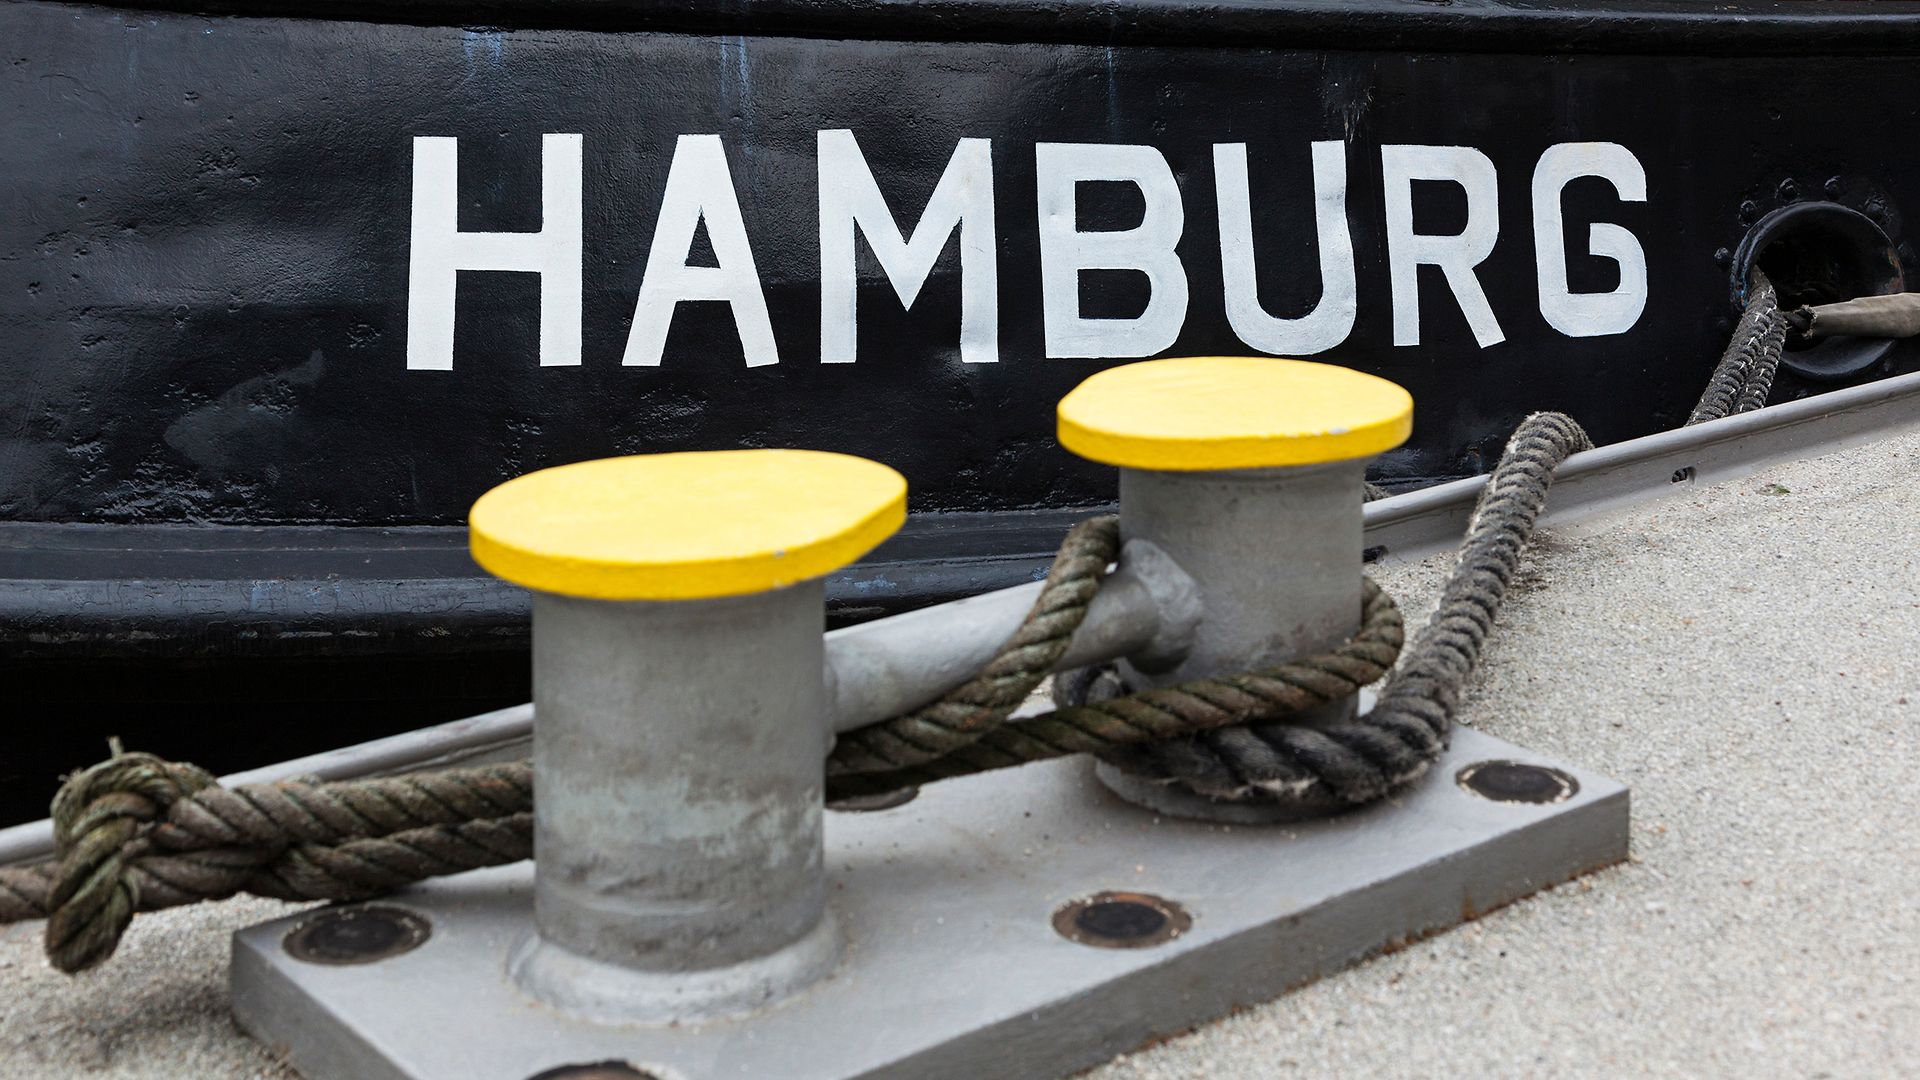 Die Schrift "HAMBURG" steht auf einem schwarzen Schiffsbug. Davor sind zwei Poller.